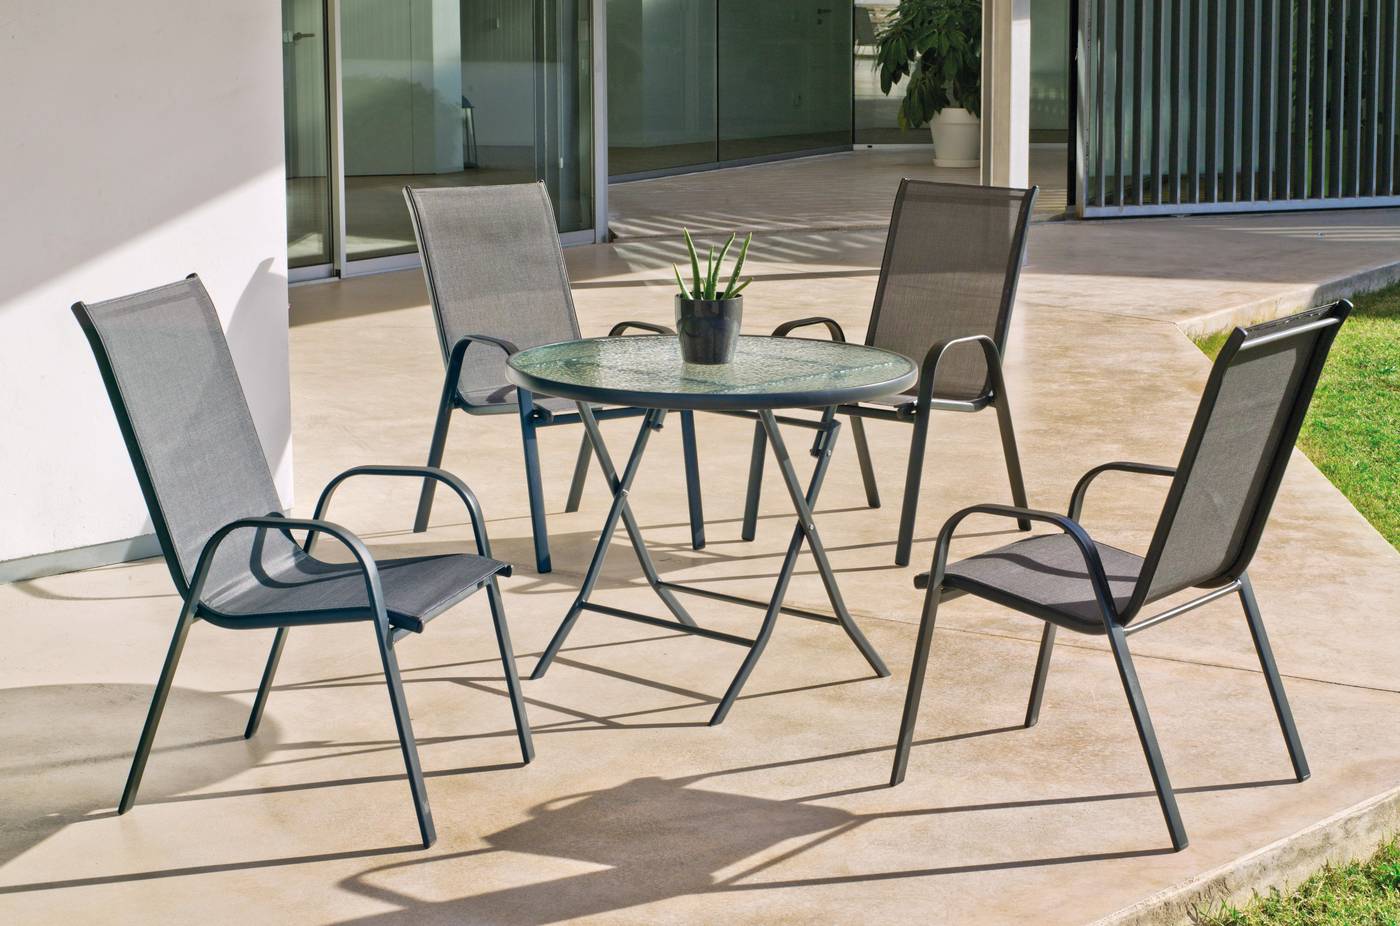 Conjunto de acero color antracita: mesa redonda de 90 cm. con tapa de cristal templado + 4 sillones de acero y textilen